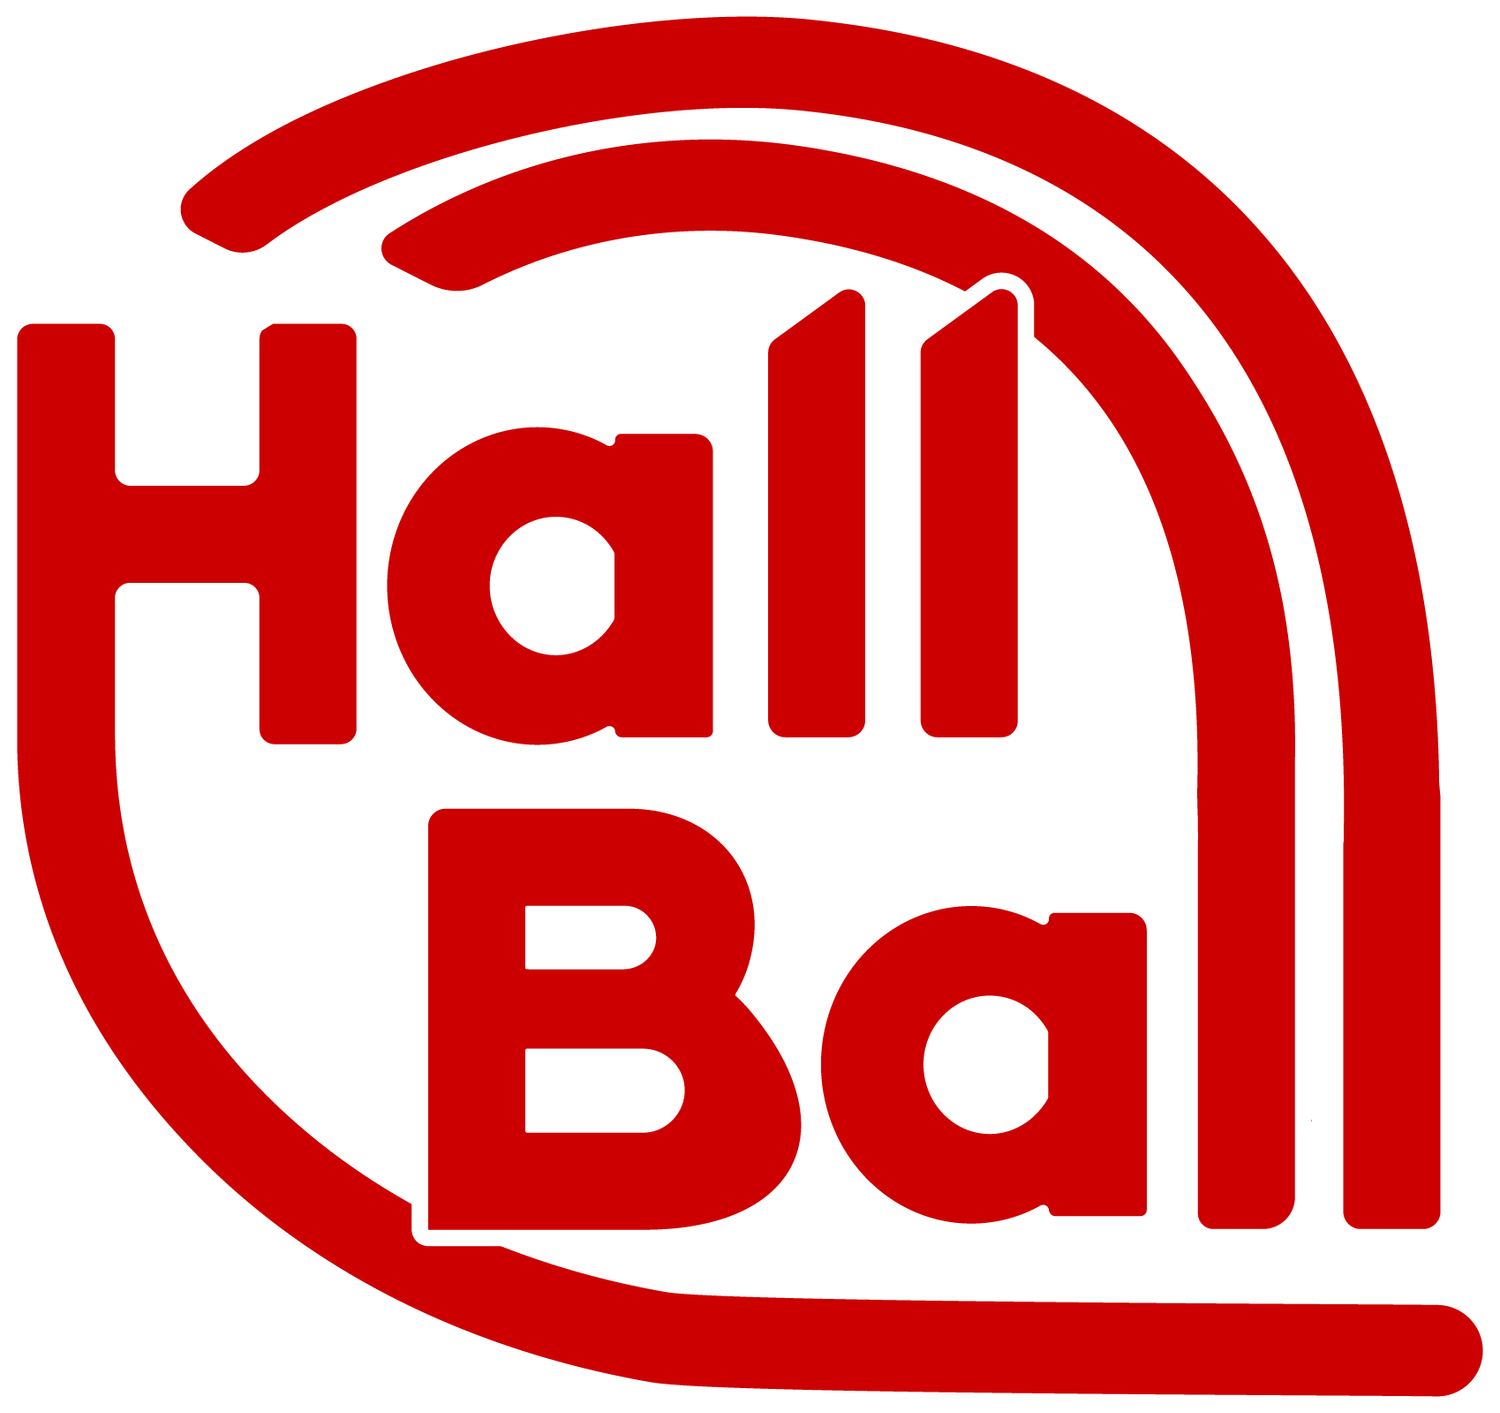 HallBall